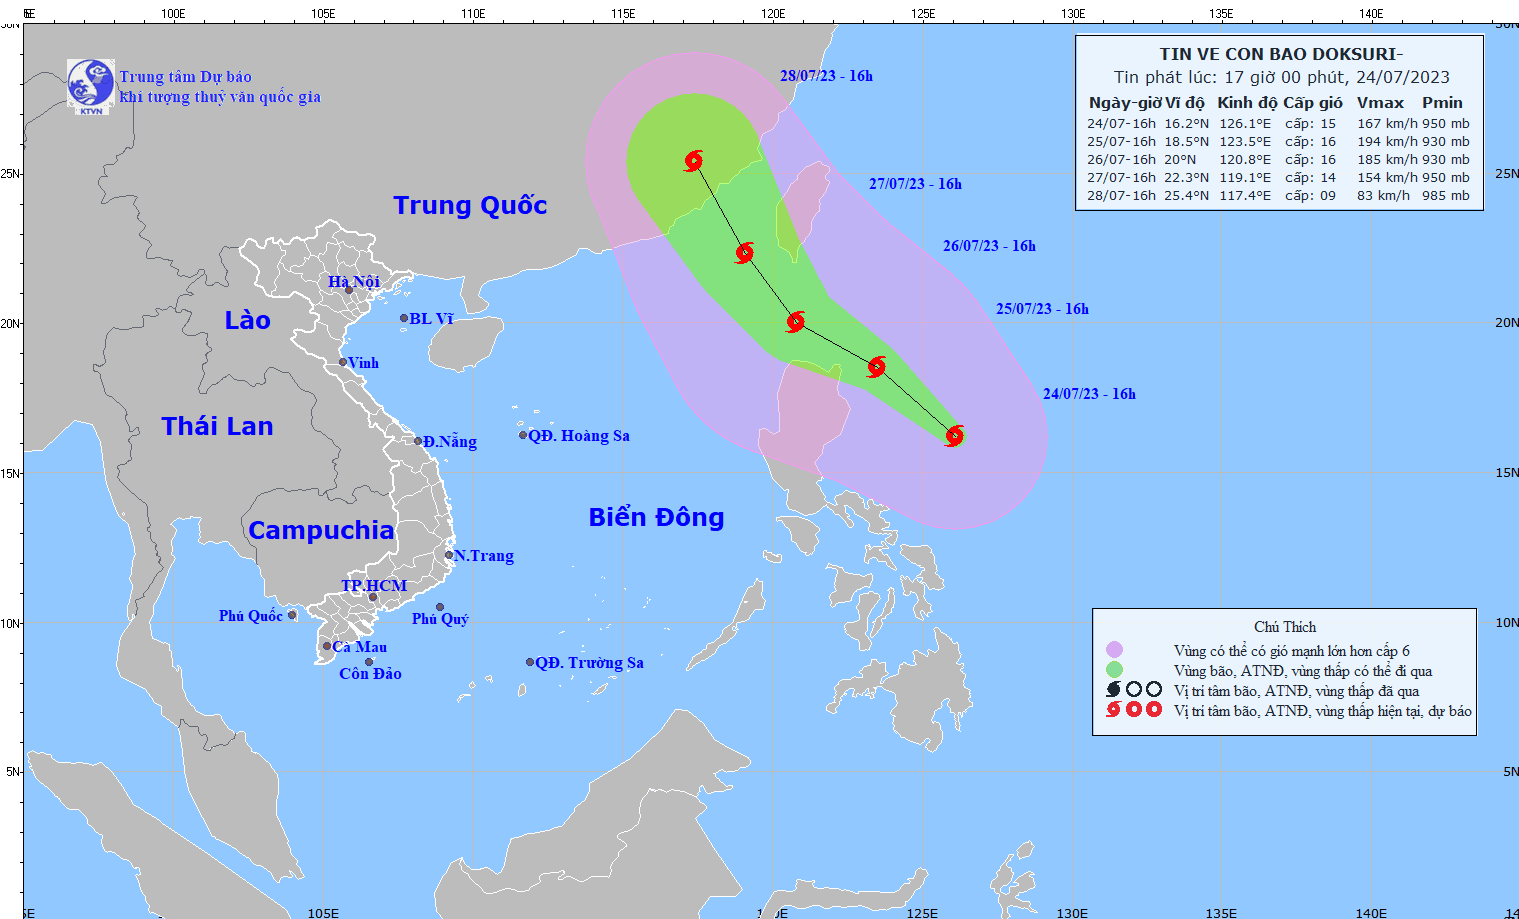 Siêu bão DOKSURI gây gió mạnh, sóng lớn trên Biển Đông